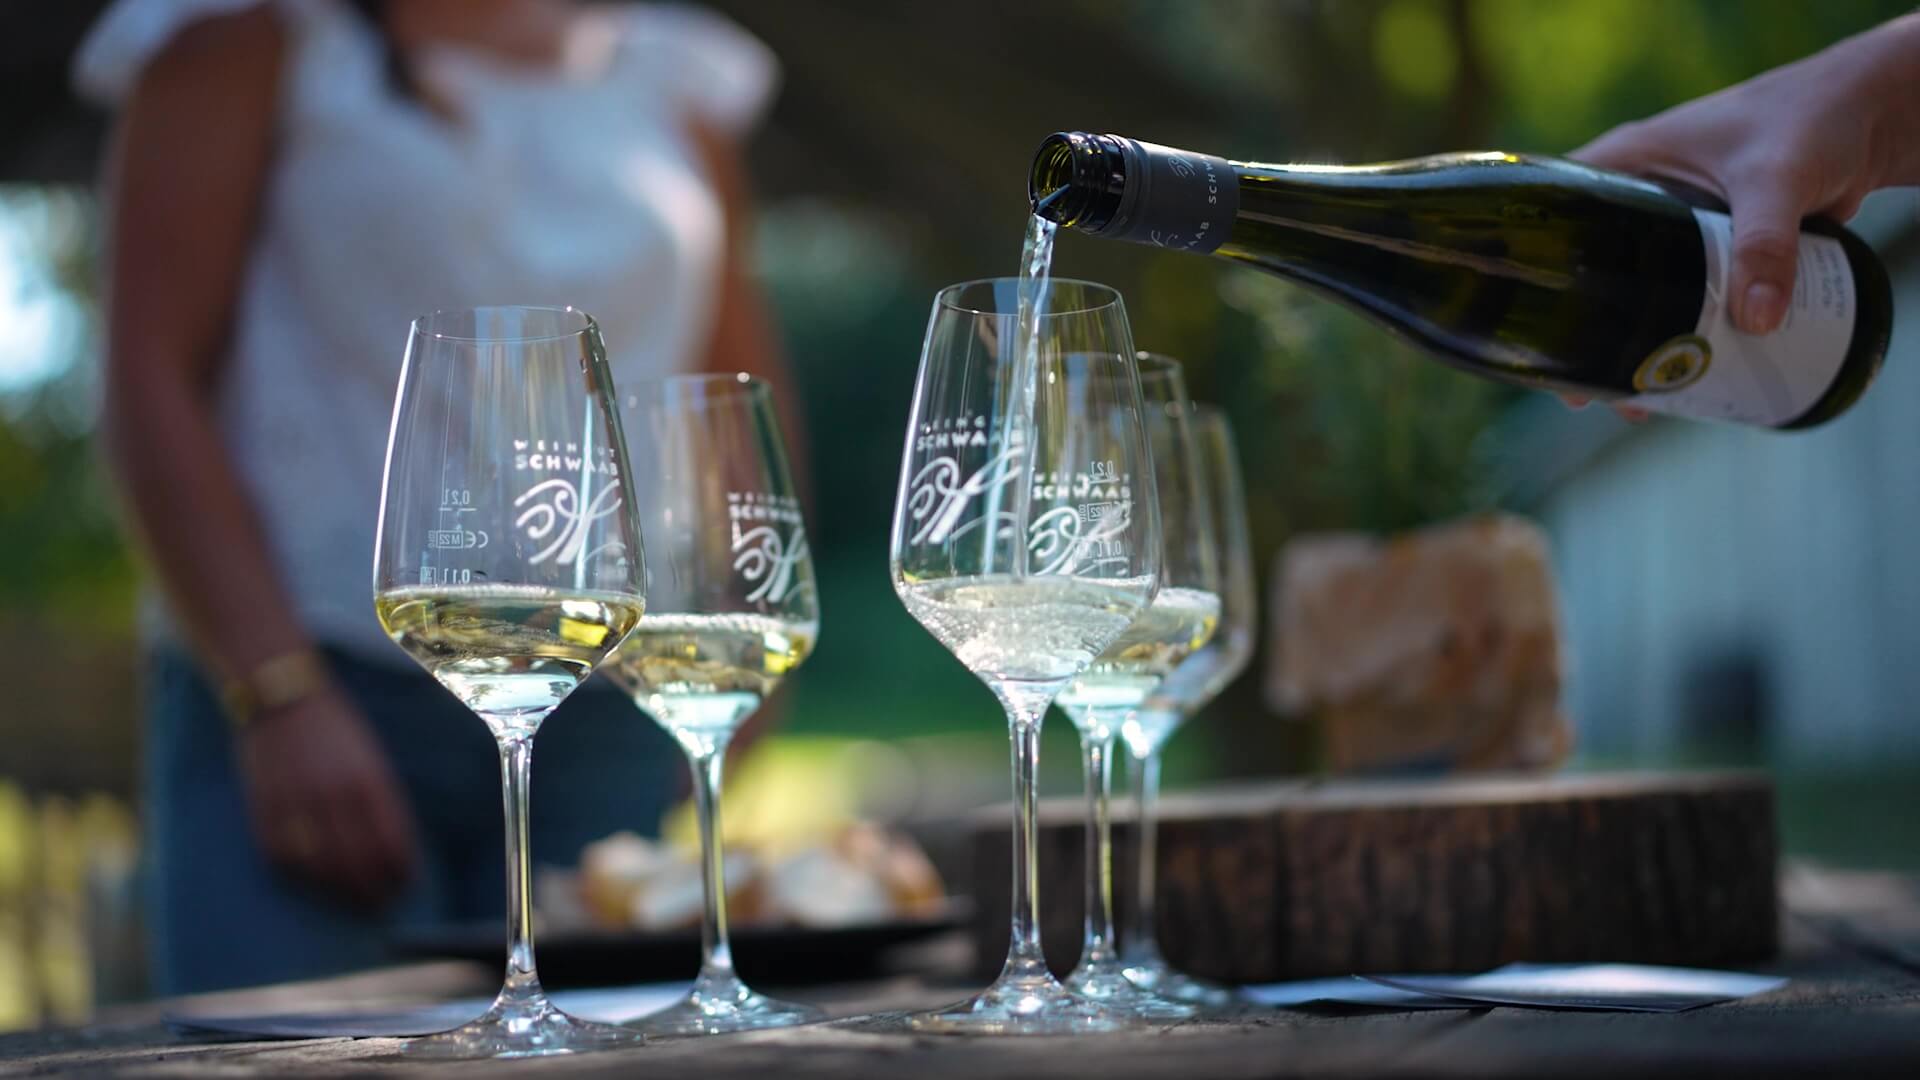 Tourguide schenkt Wein in Weingläser ein während der Marienbergtour im Weingut Schwaab. 